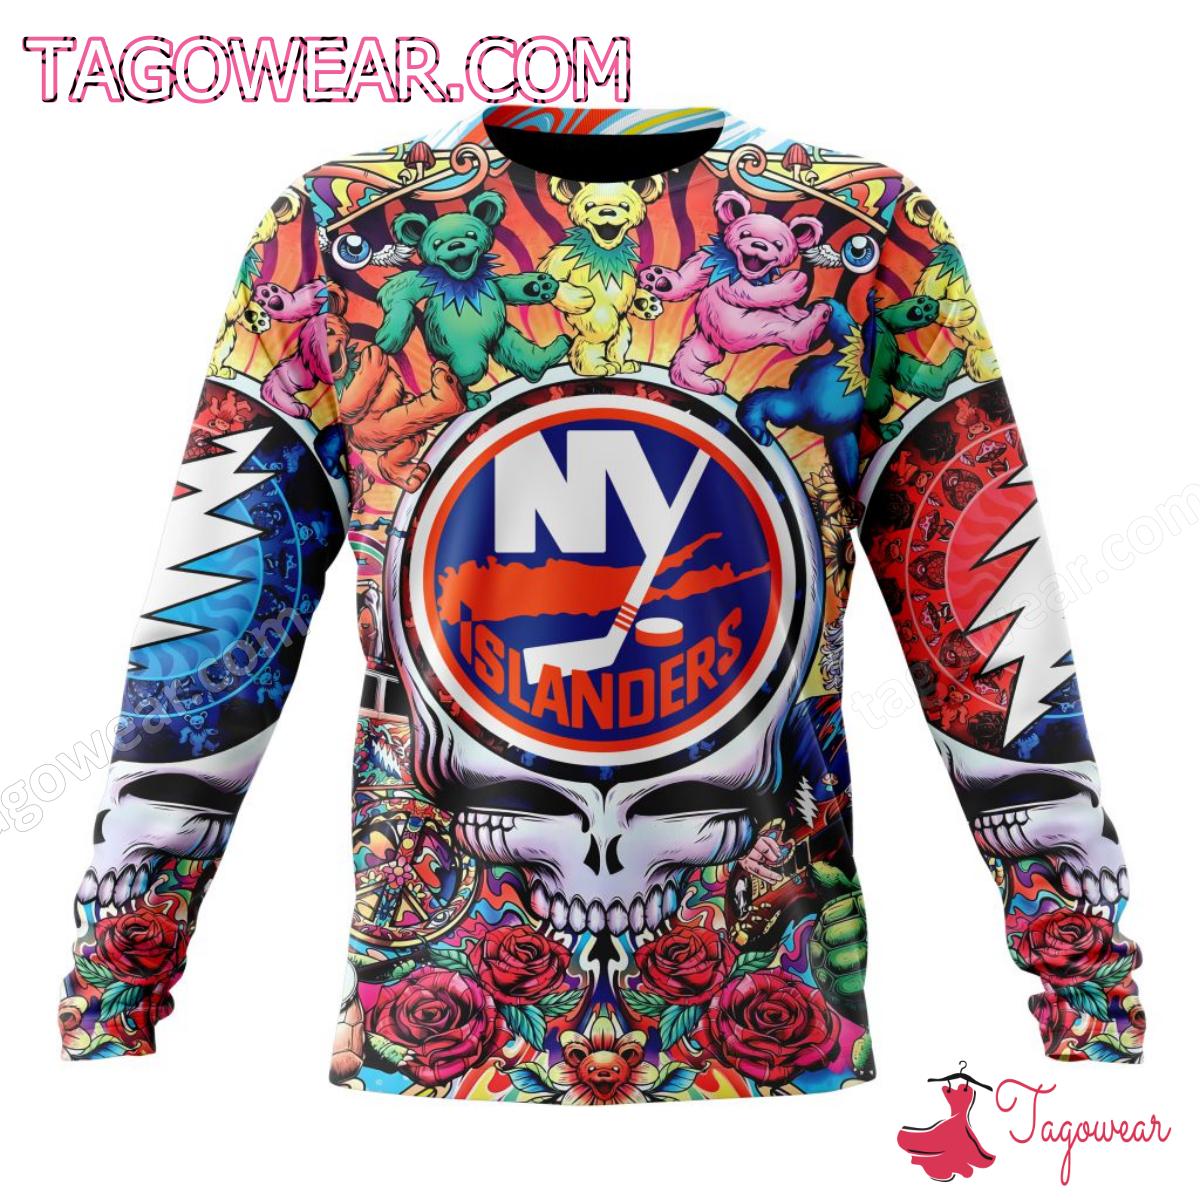 NHL New York Islanders Grateful Dead Dancing Bears Personalized T-shirt, Hoodie b